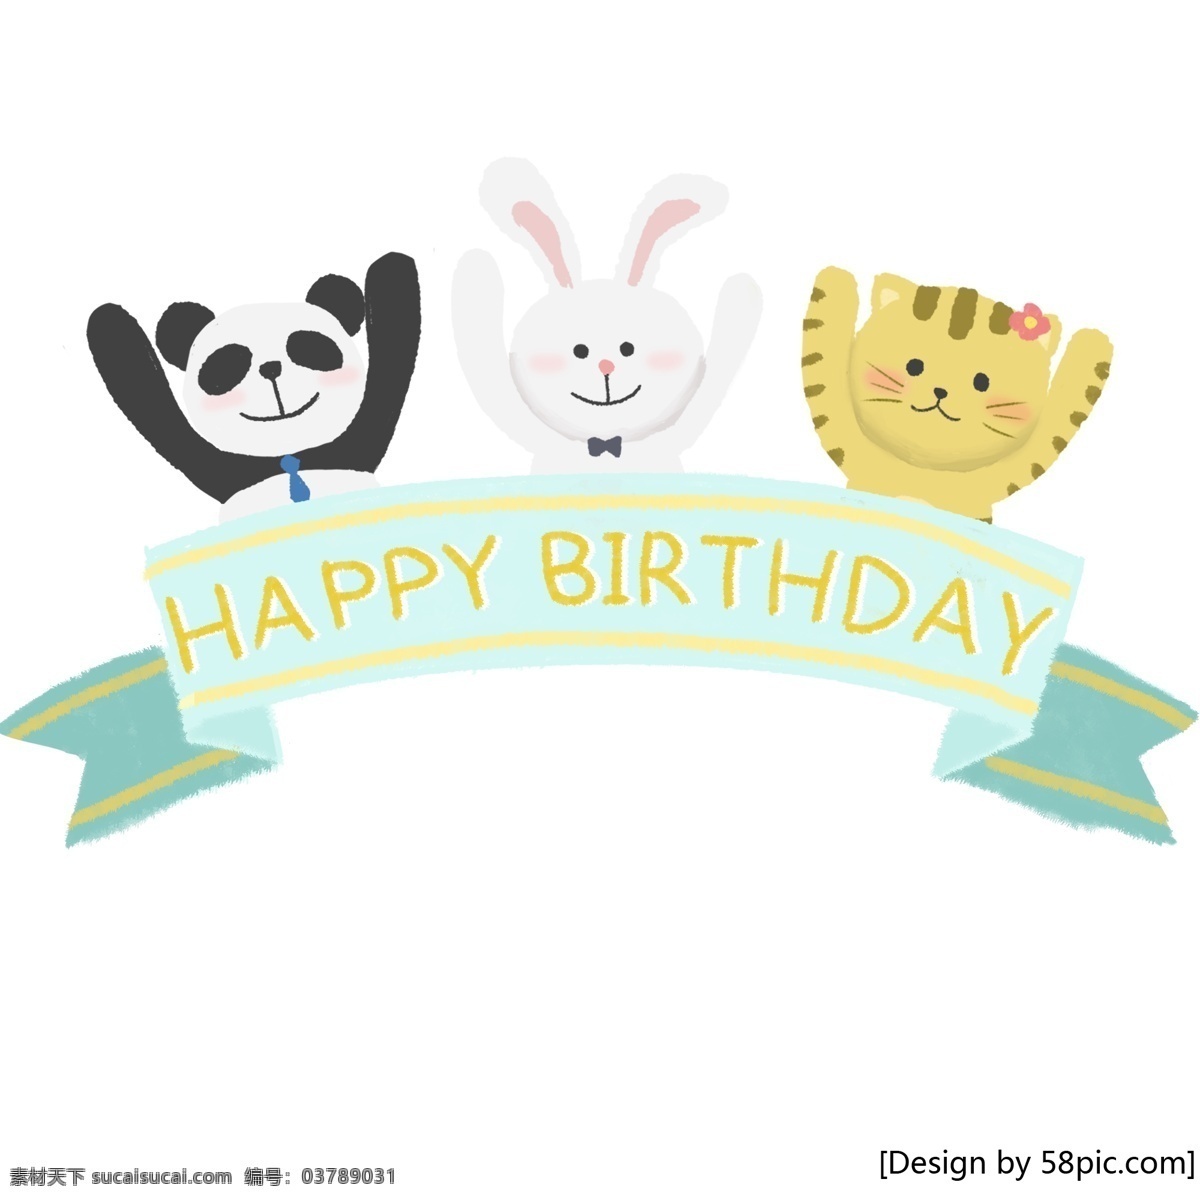 动物 生日 条幅 清新 可爱 卡通 手绘 风 熊猫 兔子 猫 birthday 庆祝 装饰 幻灯片 手绘风 甜美